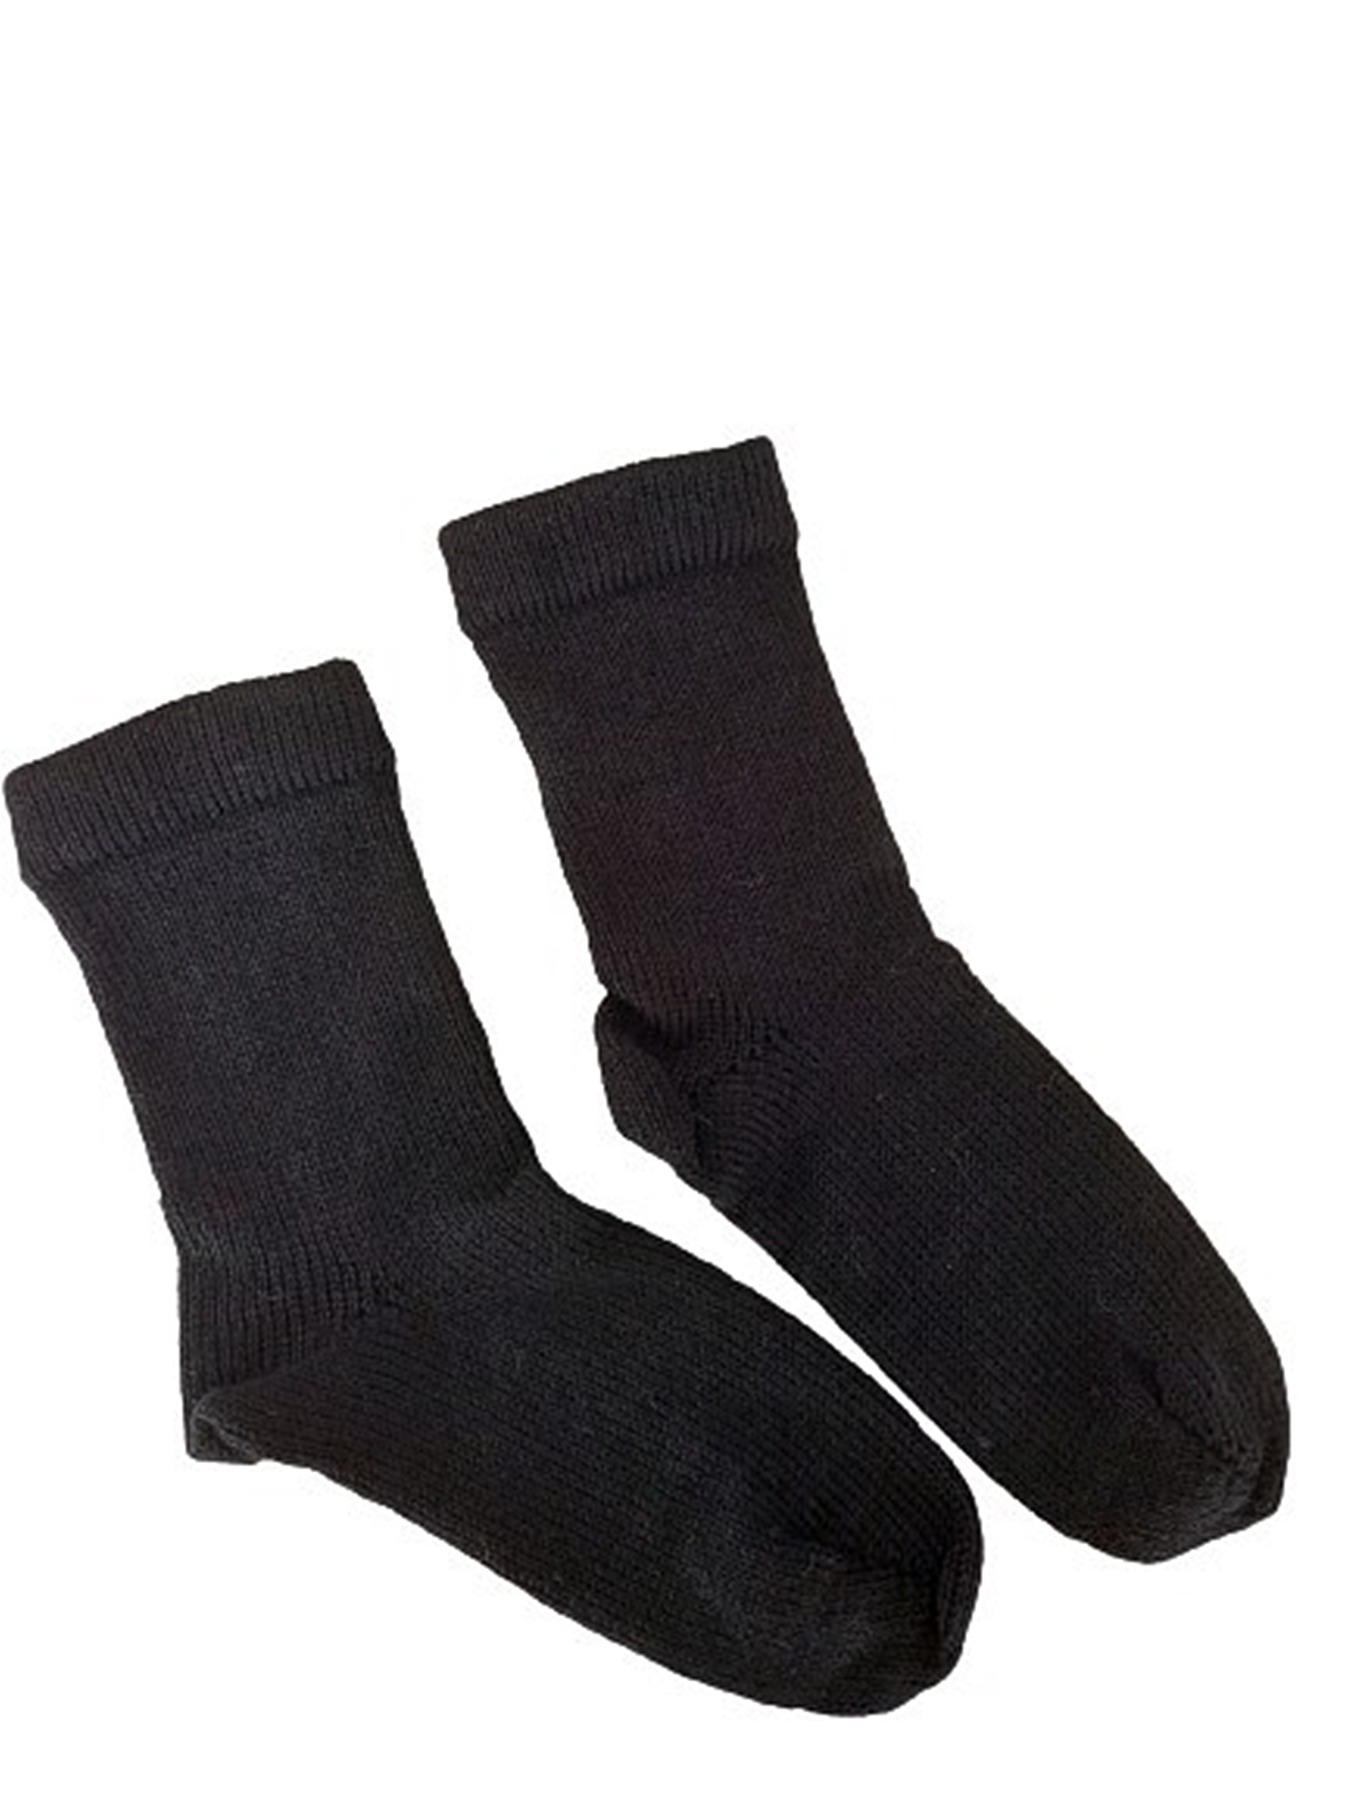 Socken in klassischem Schwarz, maschinengestrickt